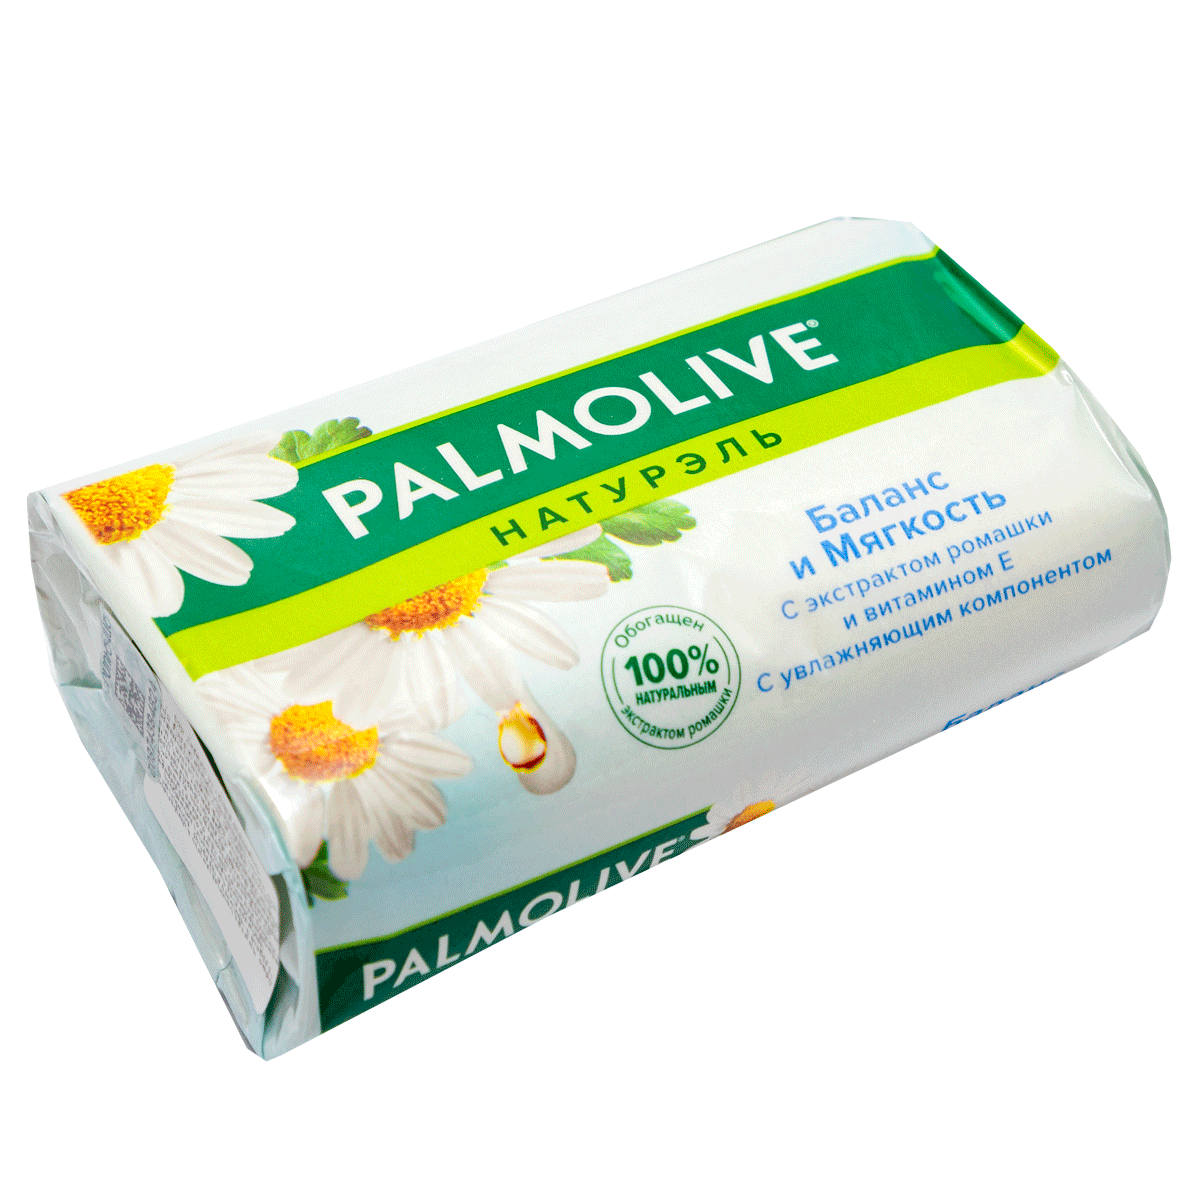 Soap Palmolive 